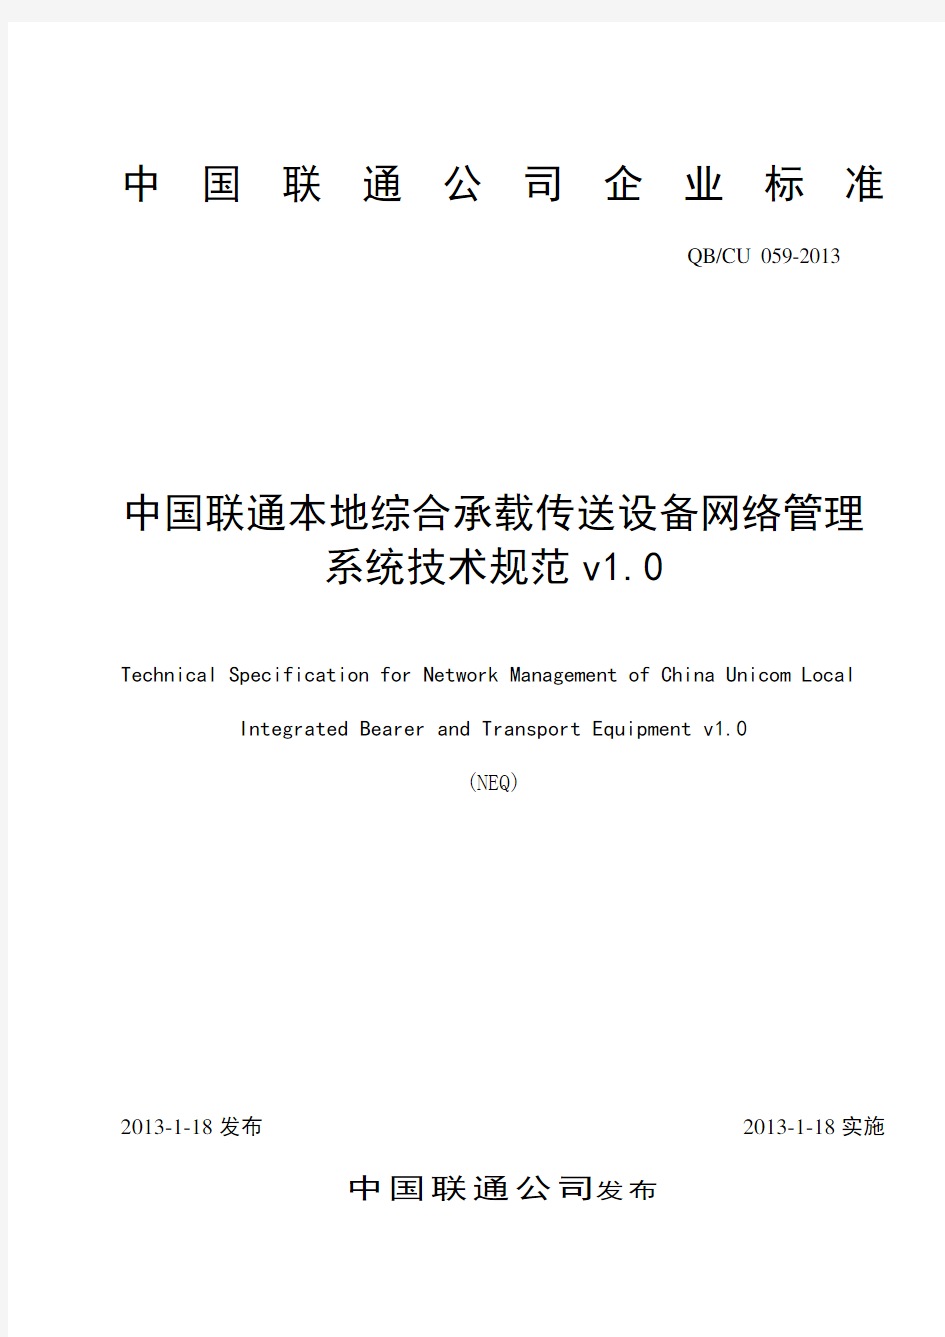 中国联通综合承载与传送设备网管系统技术规范